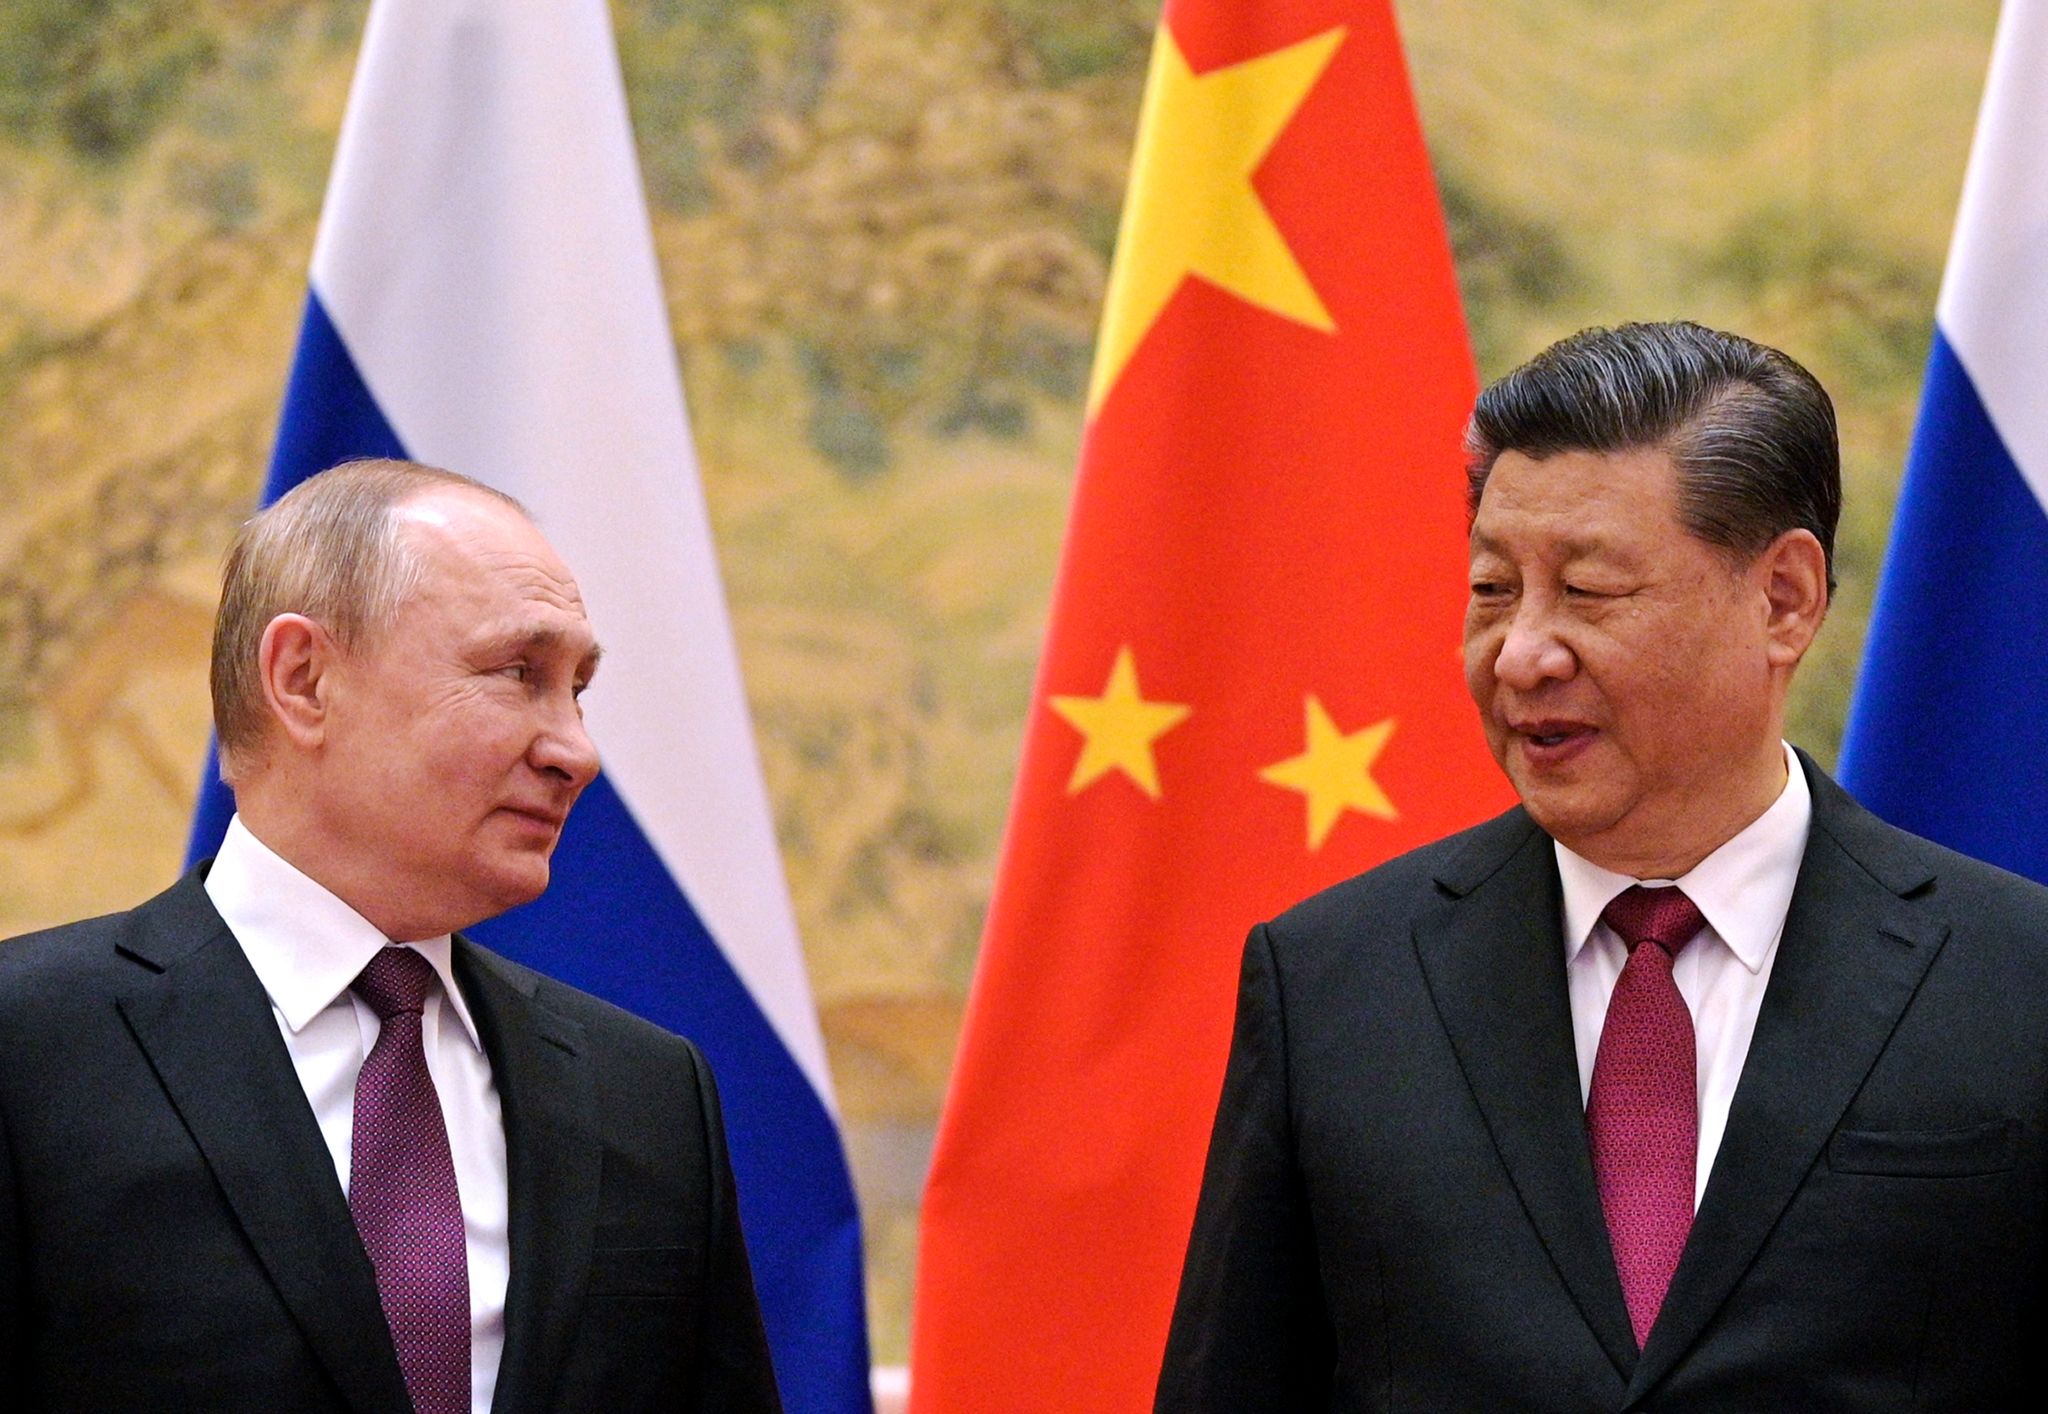 Kremlchef Wladimir Putin (l.) beim Treffen mit Chinas Präsidenten Xi Jinping in Peking im Februar vergangenen Jahres. (© Alexei Druzhinin/Sputnik Government/AP/dpa)